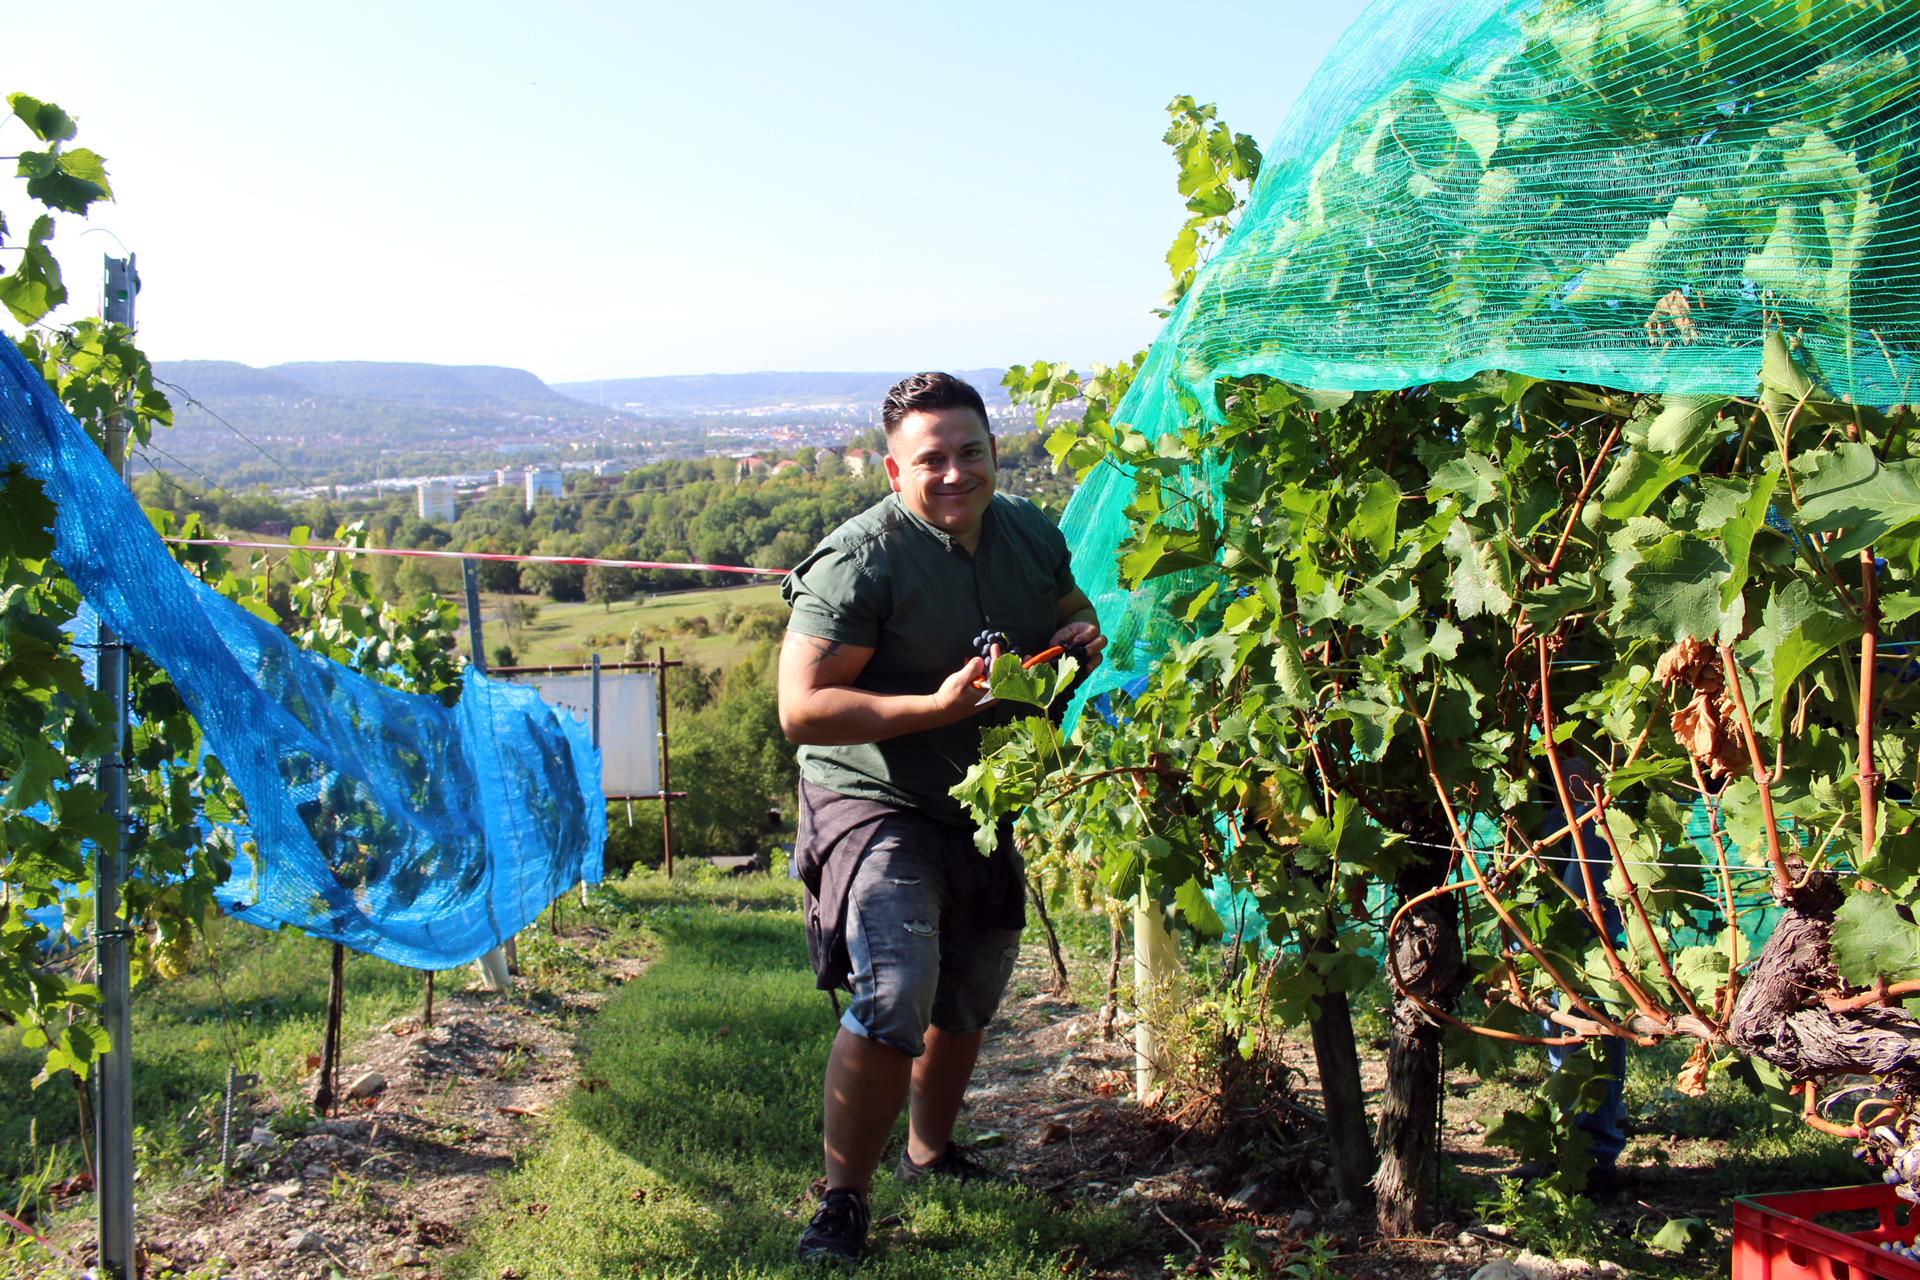 Zu sehen ist ein fröhlicher junger Mann zwischen Weinreben. Der Hintergrund bietet einen Blick ins Jenaer Tal.